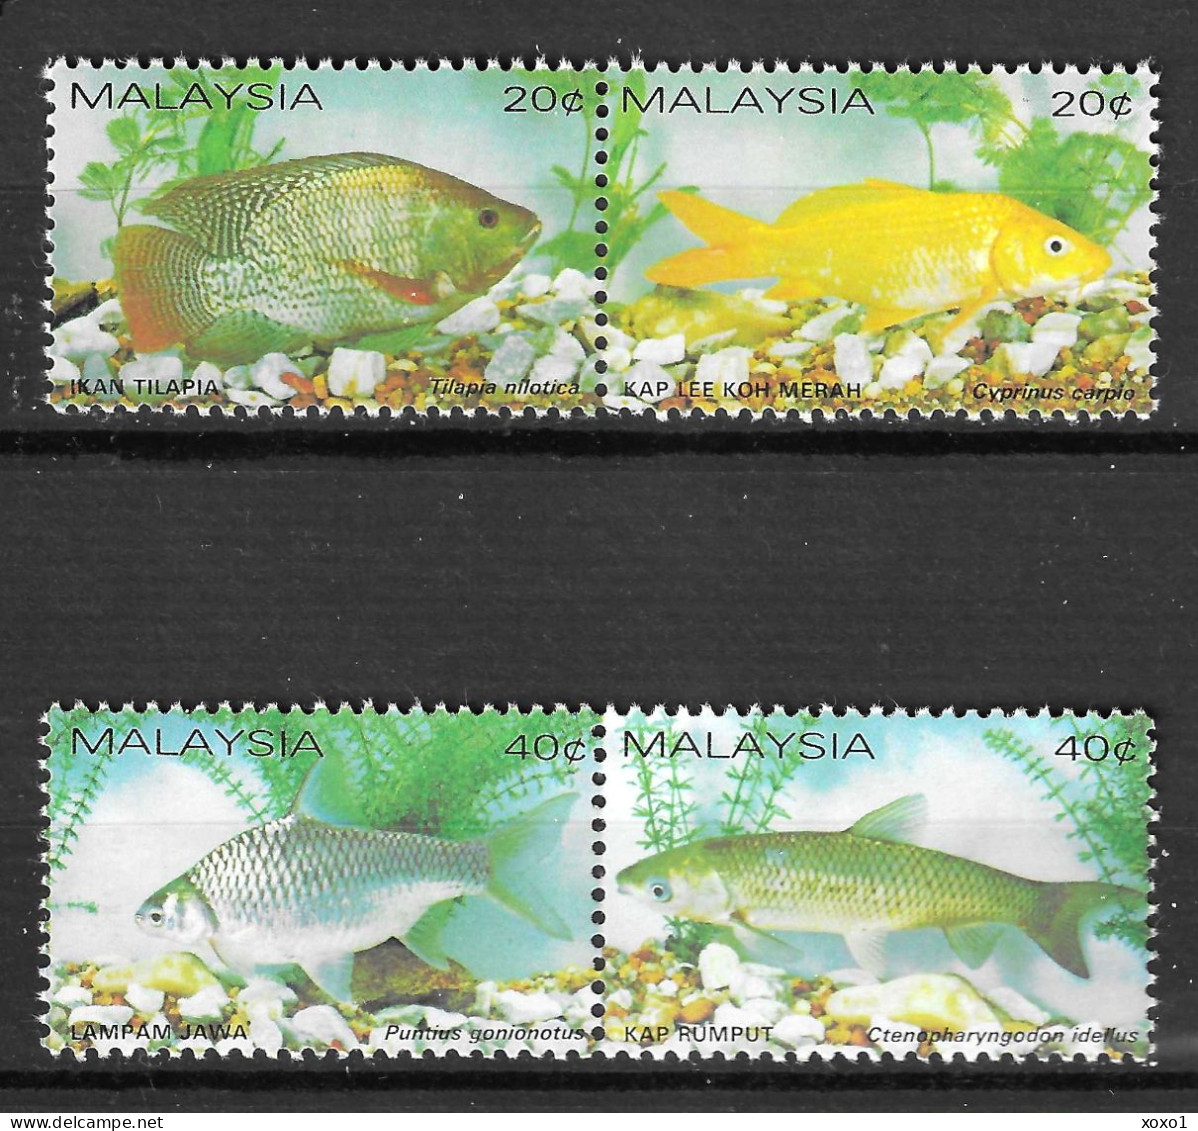 Malaysia 1983 MiNr. 258 - 261 Marine Life Fishes 4v   MNH** 12.00 € - Malaysia (1964-...)